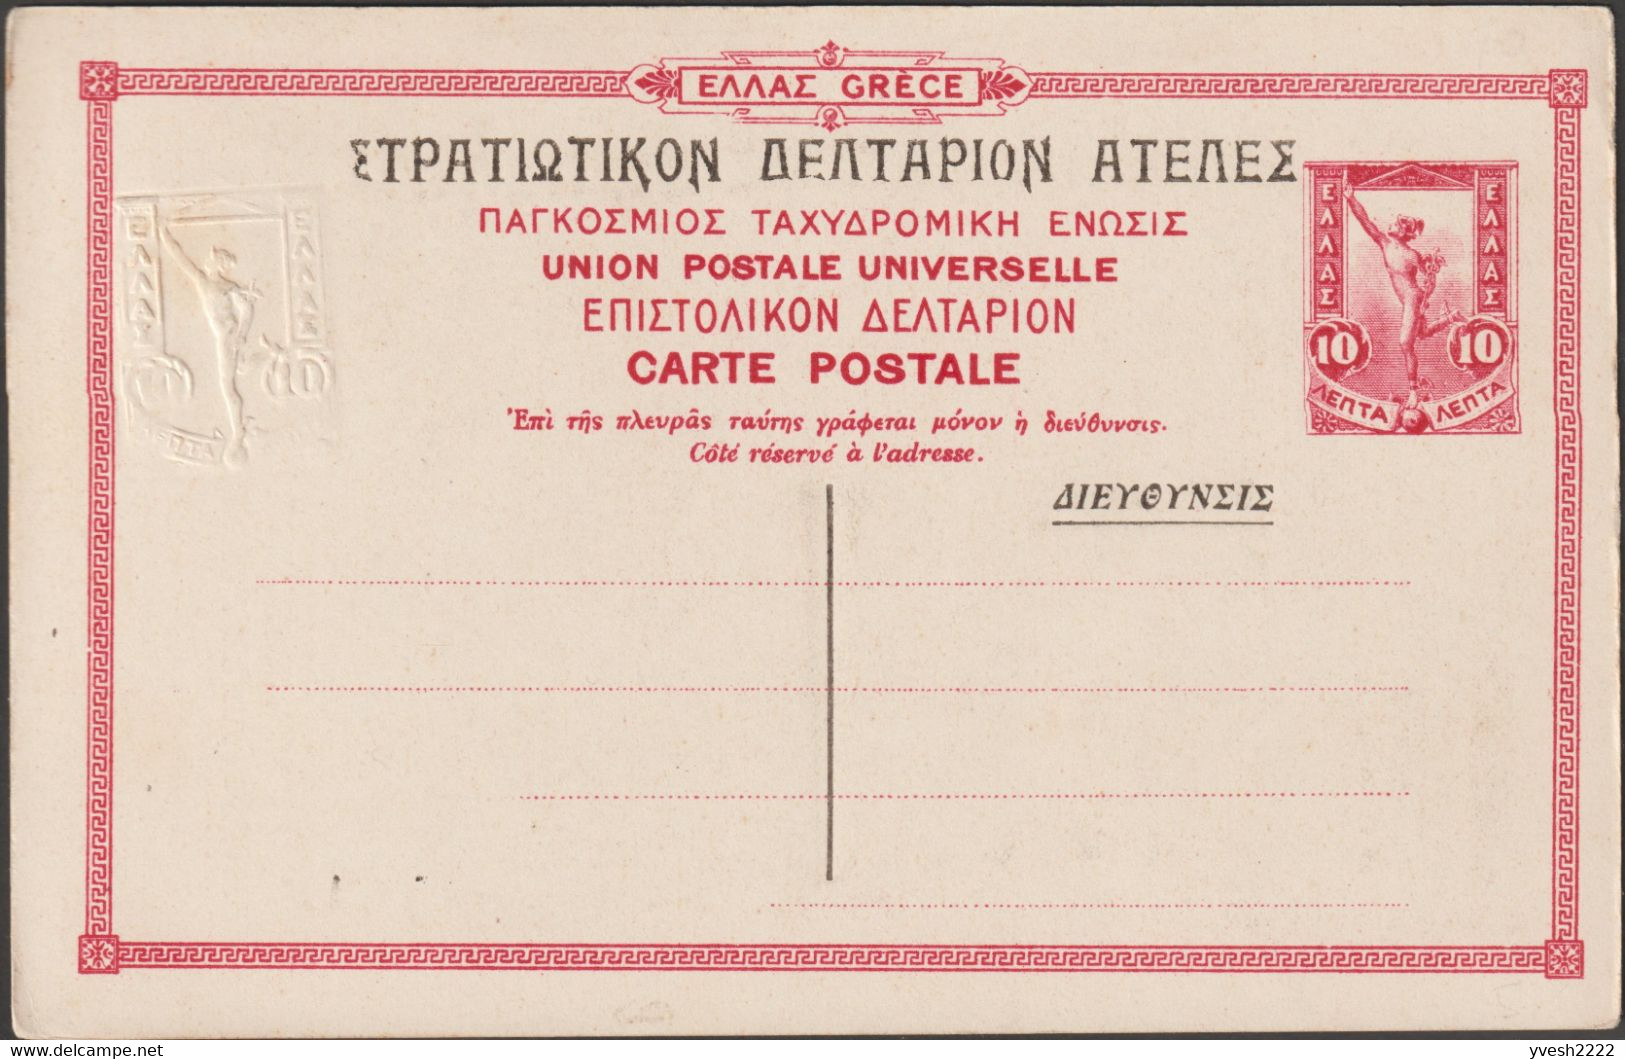 Grèce 1915. Carte Postale, Entier Officiel. Athènes, Stèle Funéraire D'Asistion. Aristion De Paros était Un Sculpteur - Oddities On Stamps